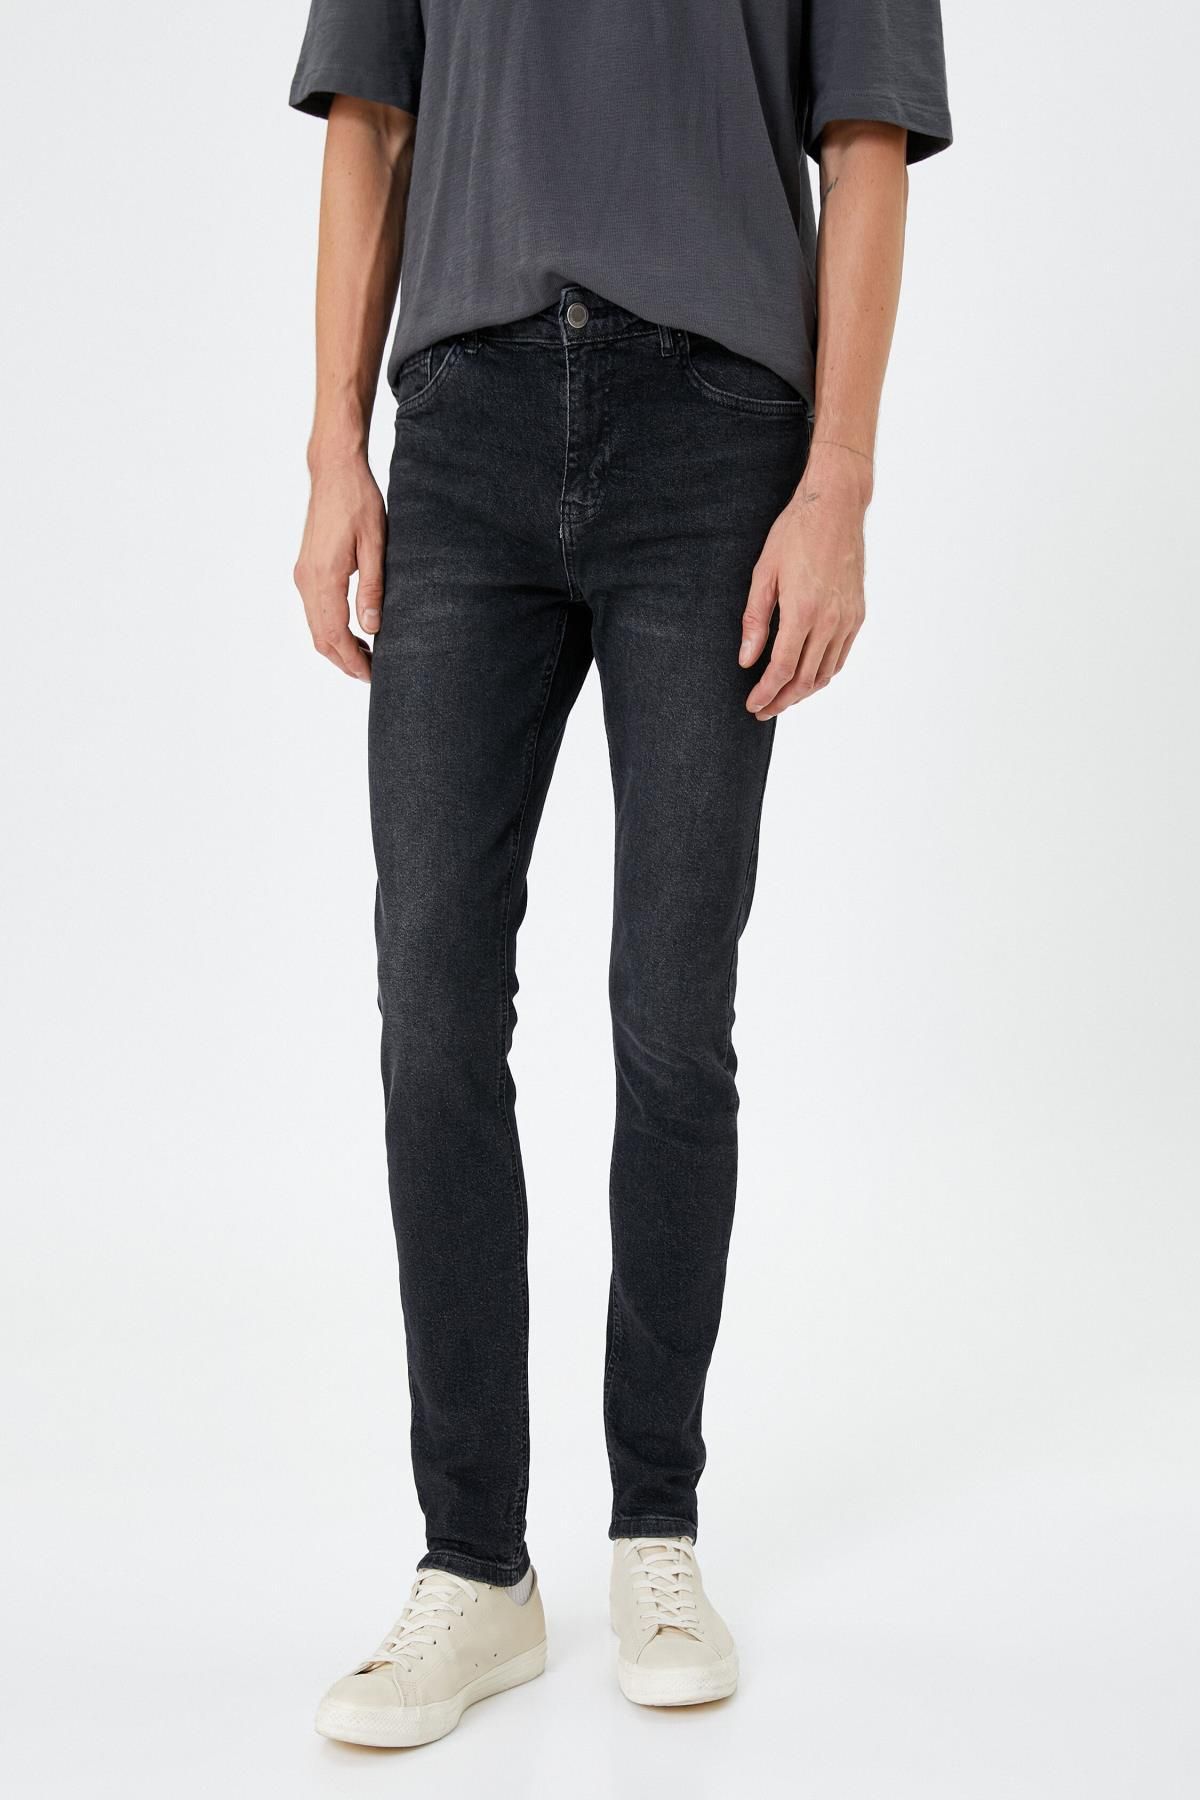 Koton لباس مردانه شلوار جین مشکی